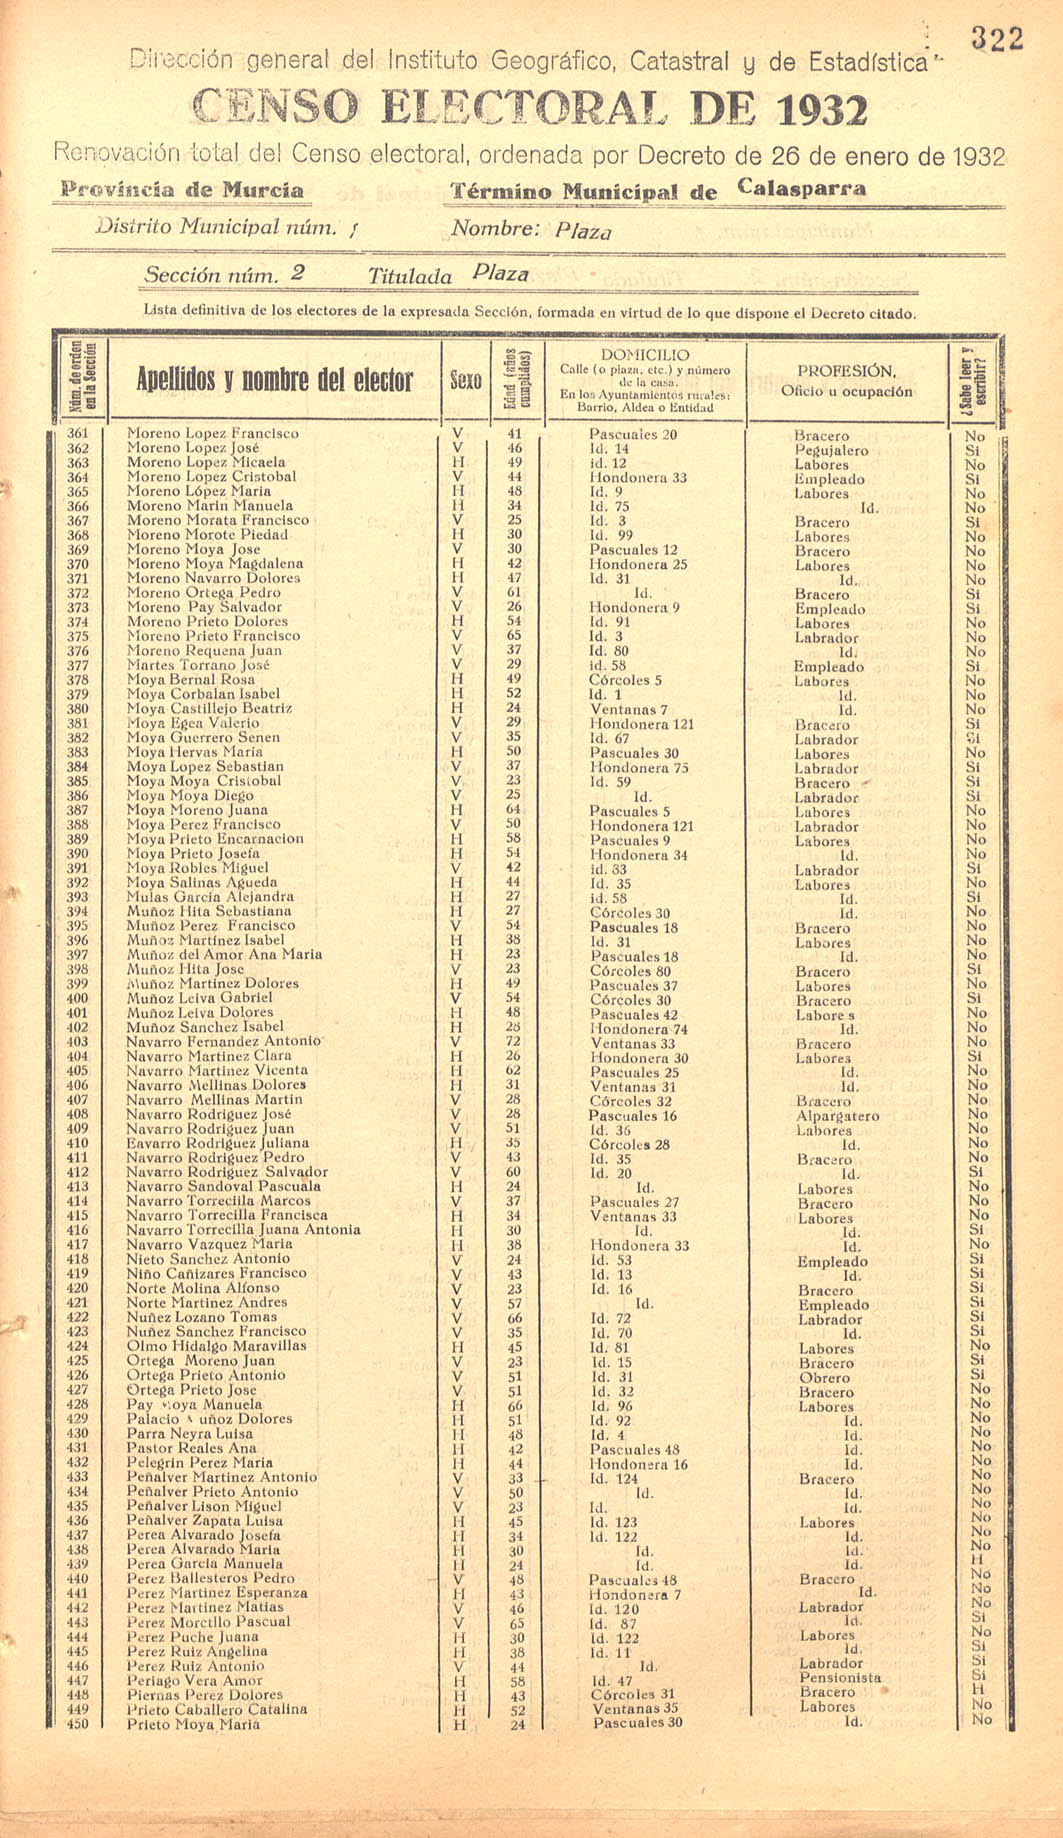 Censo electoral provincial de 1932. Listas definitivas de Calasparra, formadas en virtud del Decreto de 26 de enero de 1932.